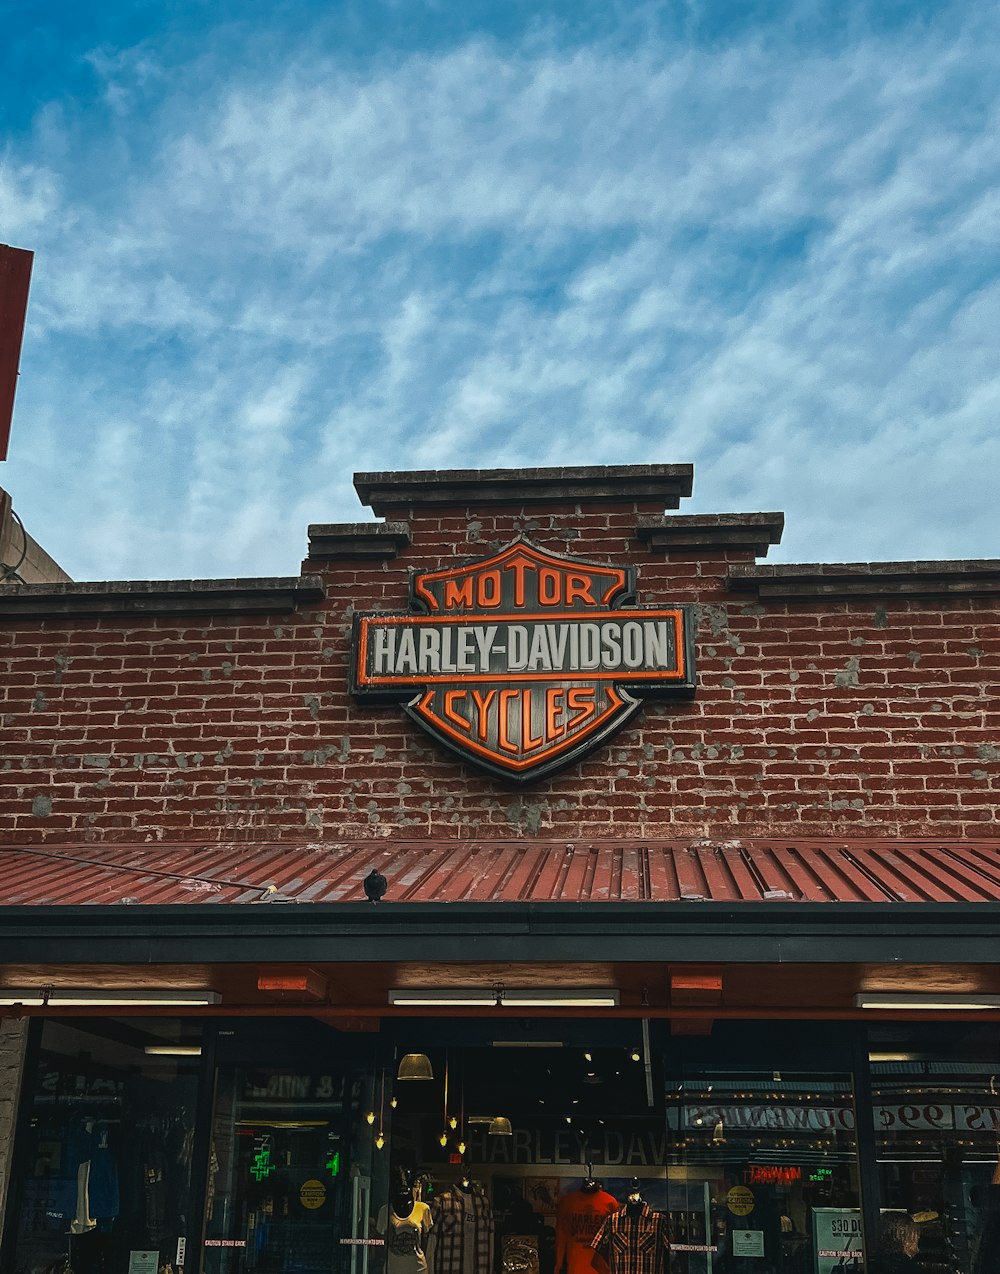 할리 데이비슨 사이클(Harley Davidson Cycles)이라는 간판이 있는 벽돌 건물